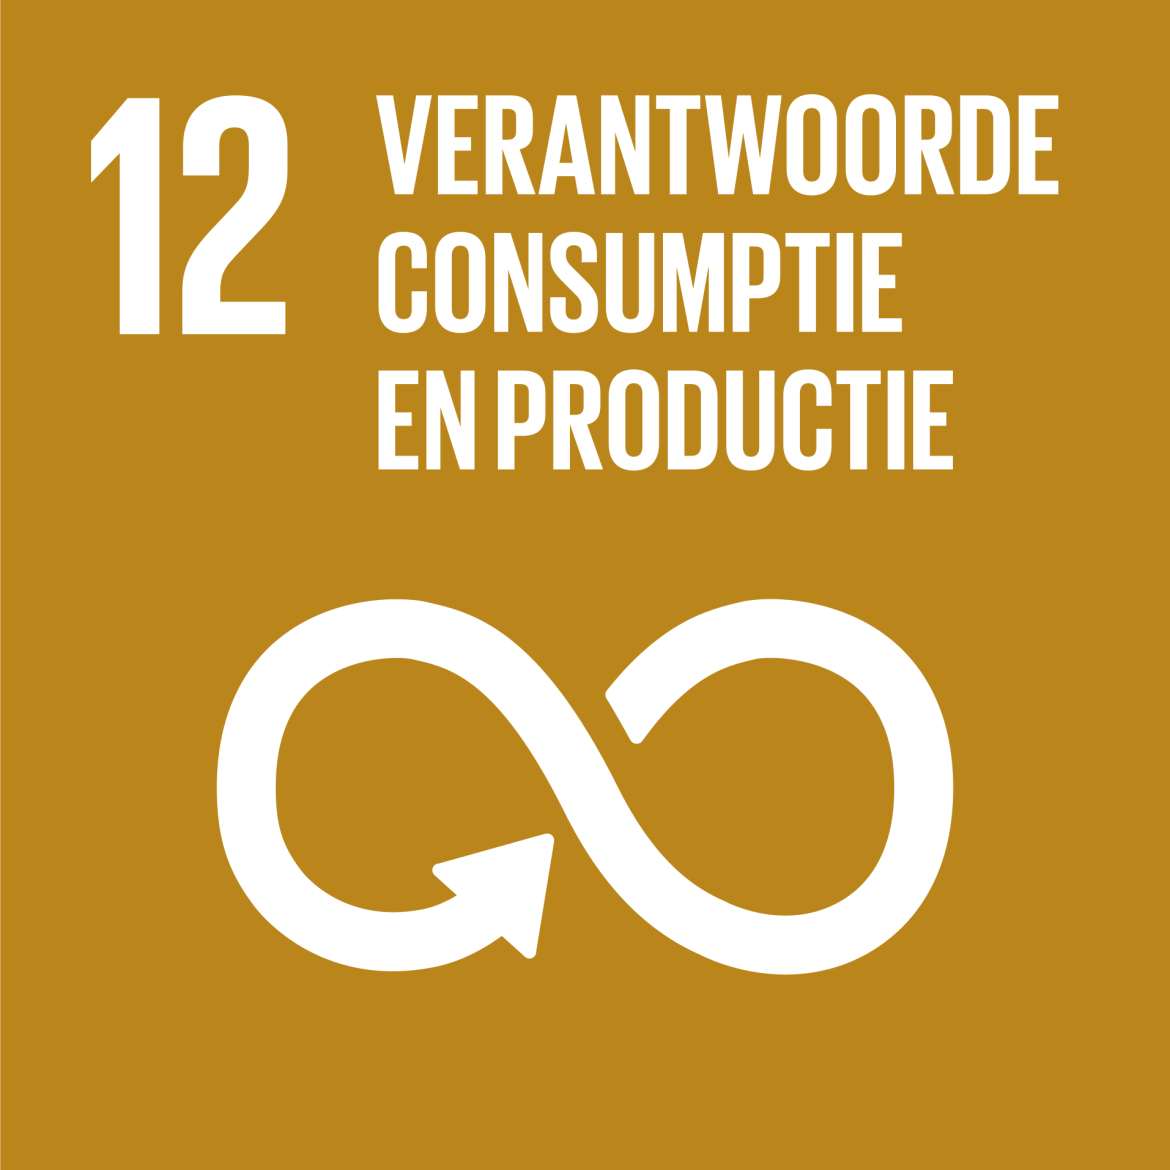 Sustainable Development Goal 12: Verantwoorde consumptie en productie